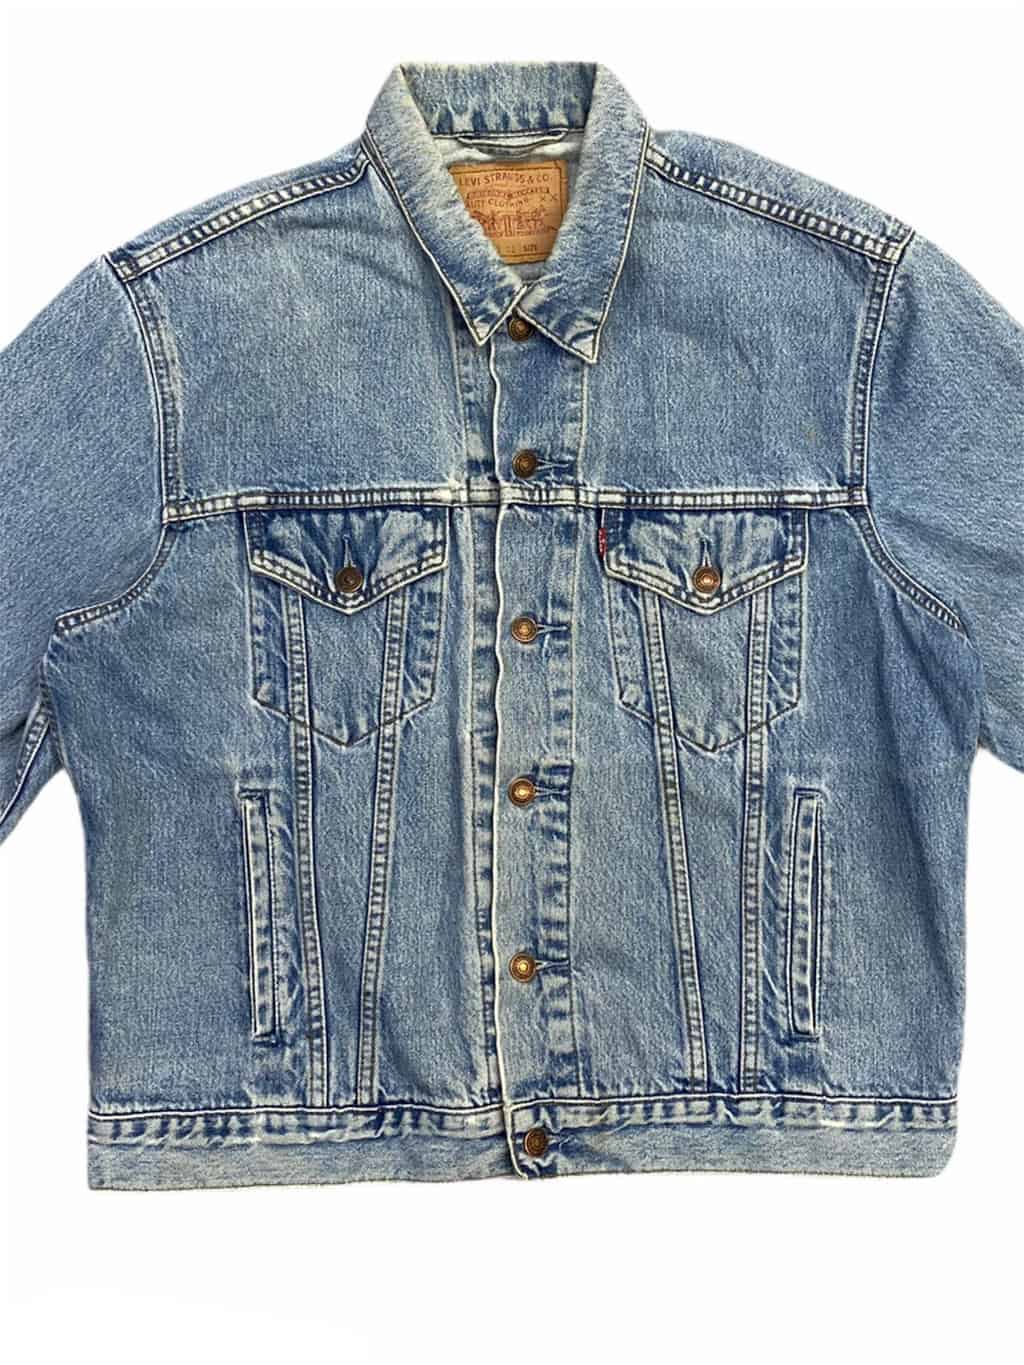 Vintage 90s Levis trucker jacket 70503 in stonewash blue denim with red ...